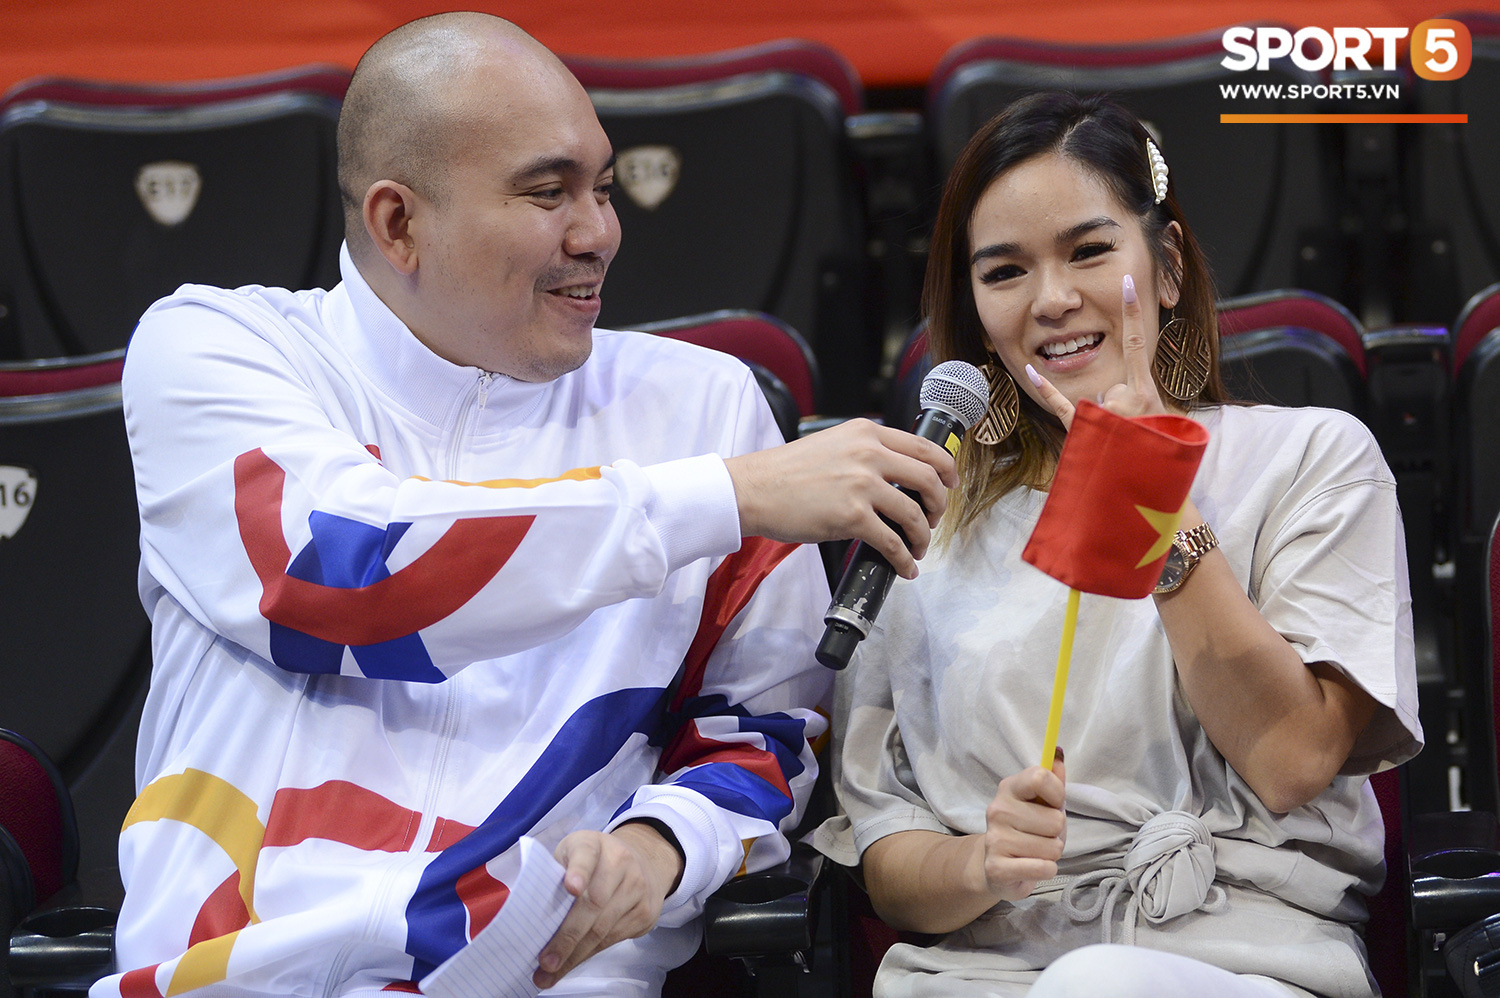 Bất ngờ xuất hiện tại SEA Games 30, nữ ca sĩ tham gia đóng MV cùng Đen Vâu cổ vũ hết mình cho đội tuyển bóng rổ Việt Nam - Ảnh 3.